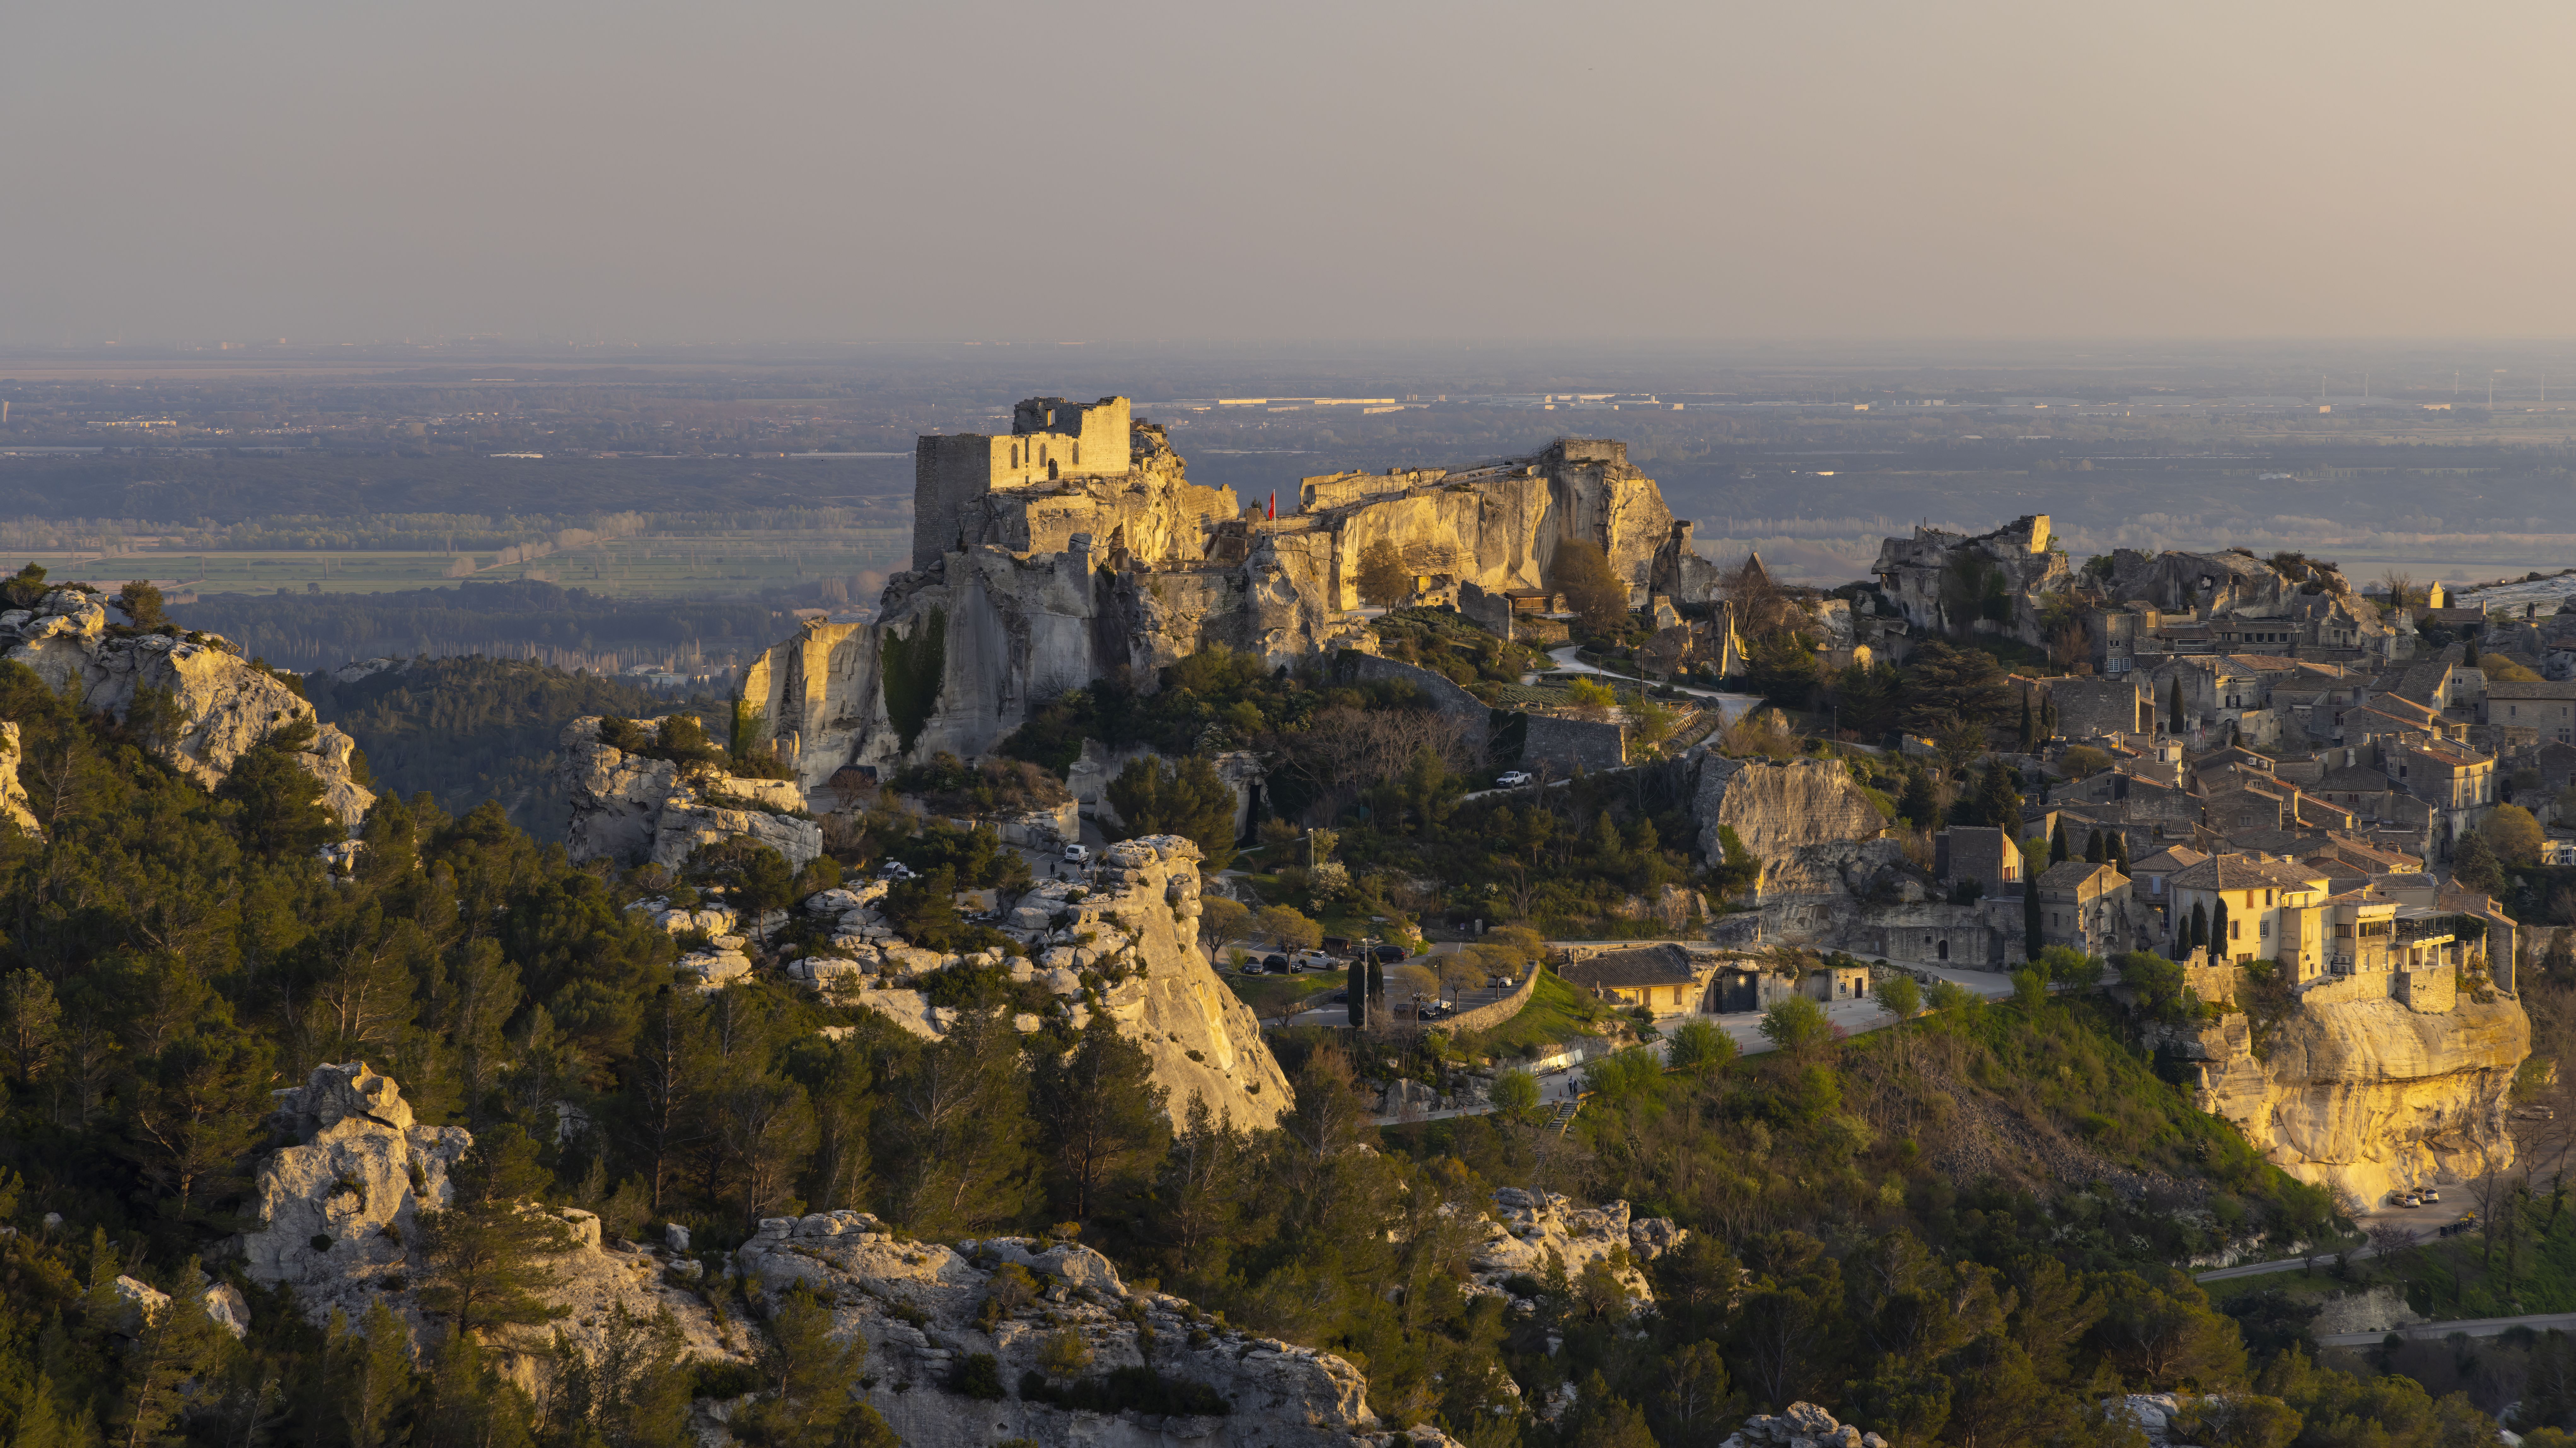 Les Baux-de-Provence, photo: phbcz / GettyImages